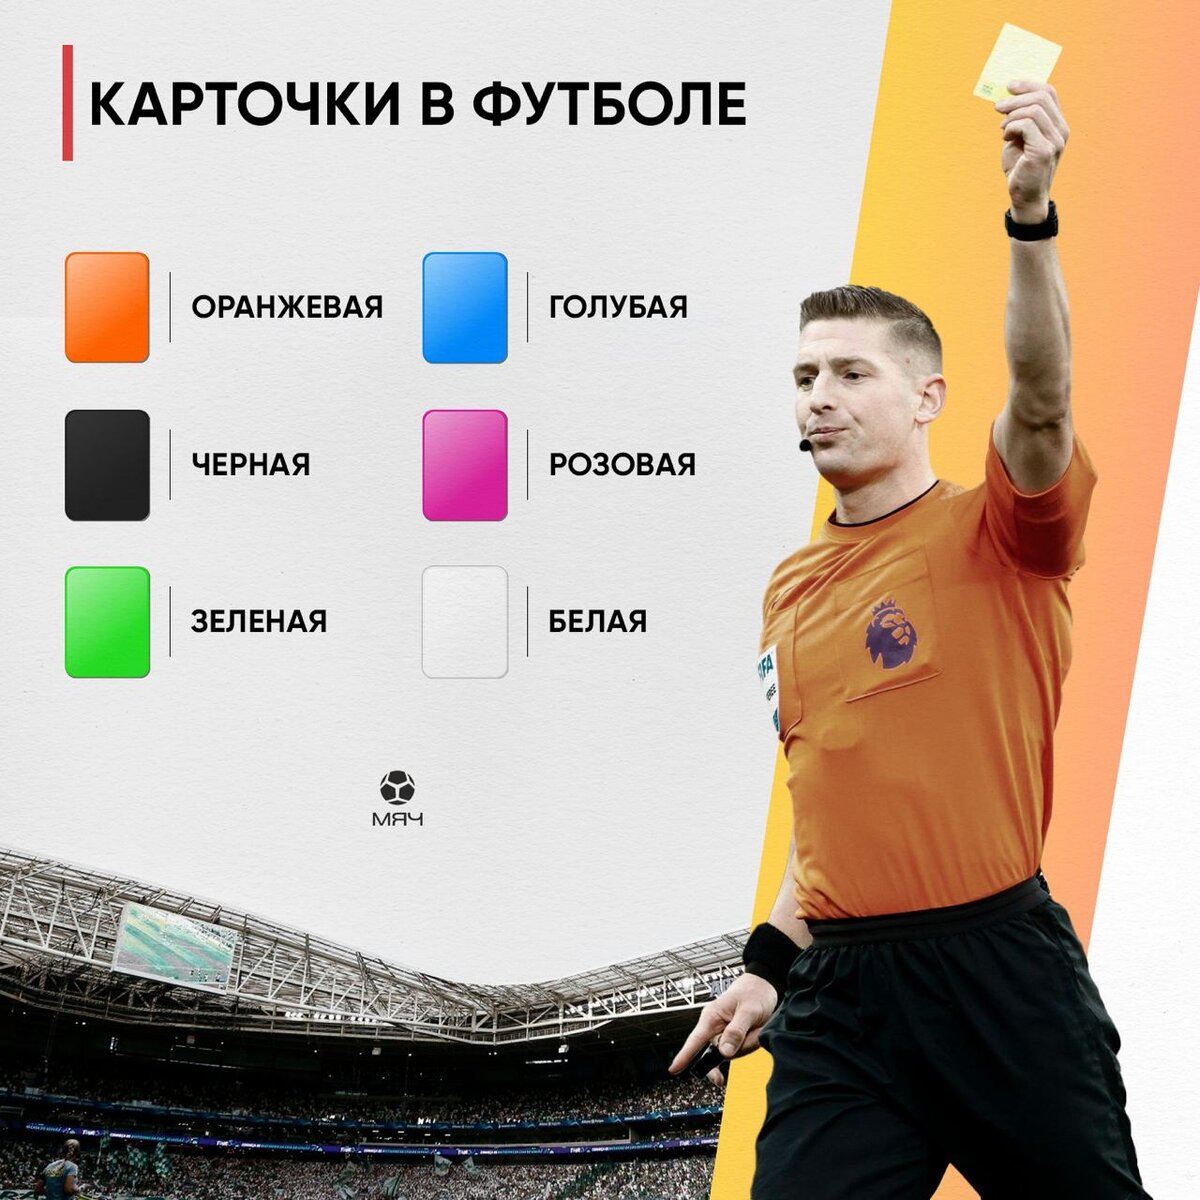 оранжевая карточка в футболе